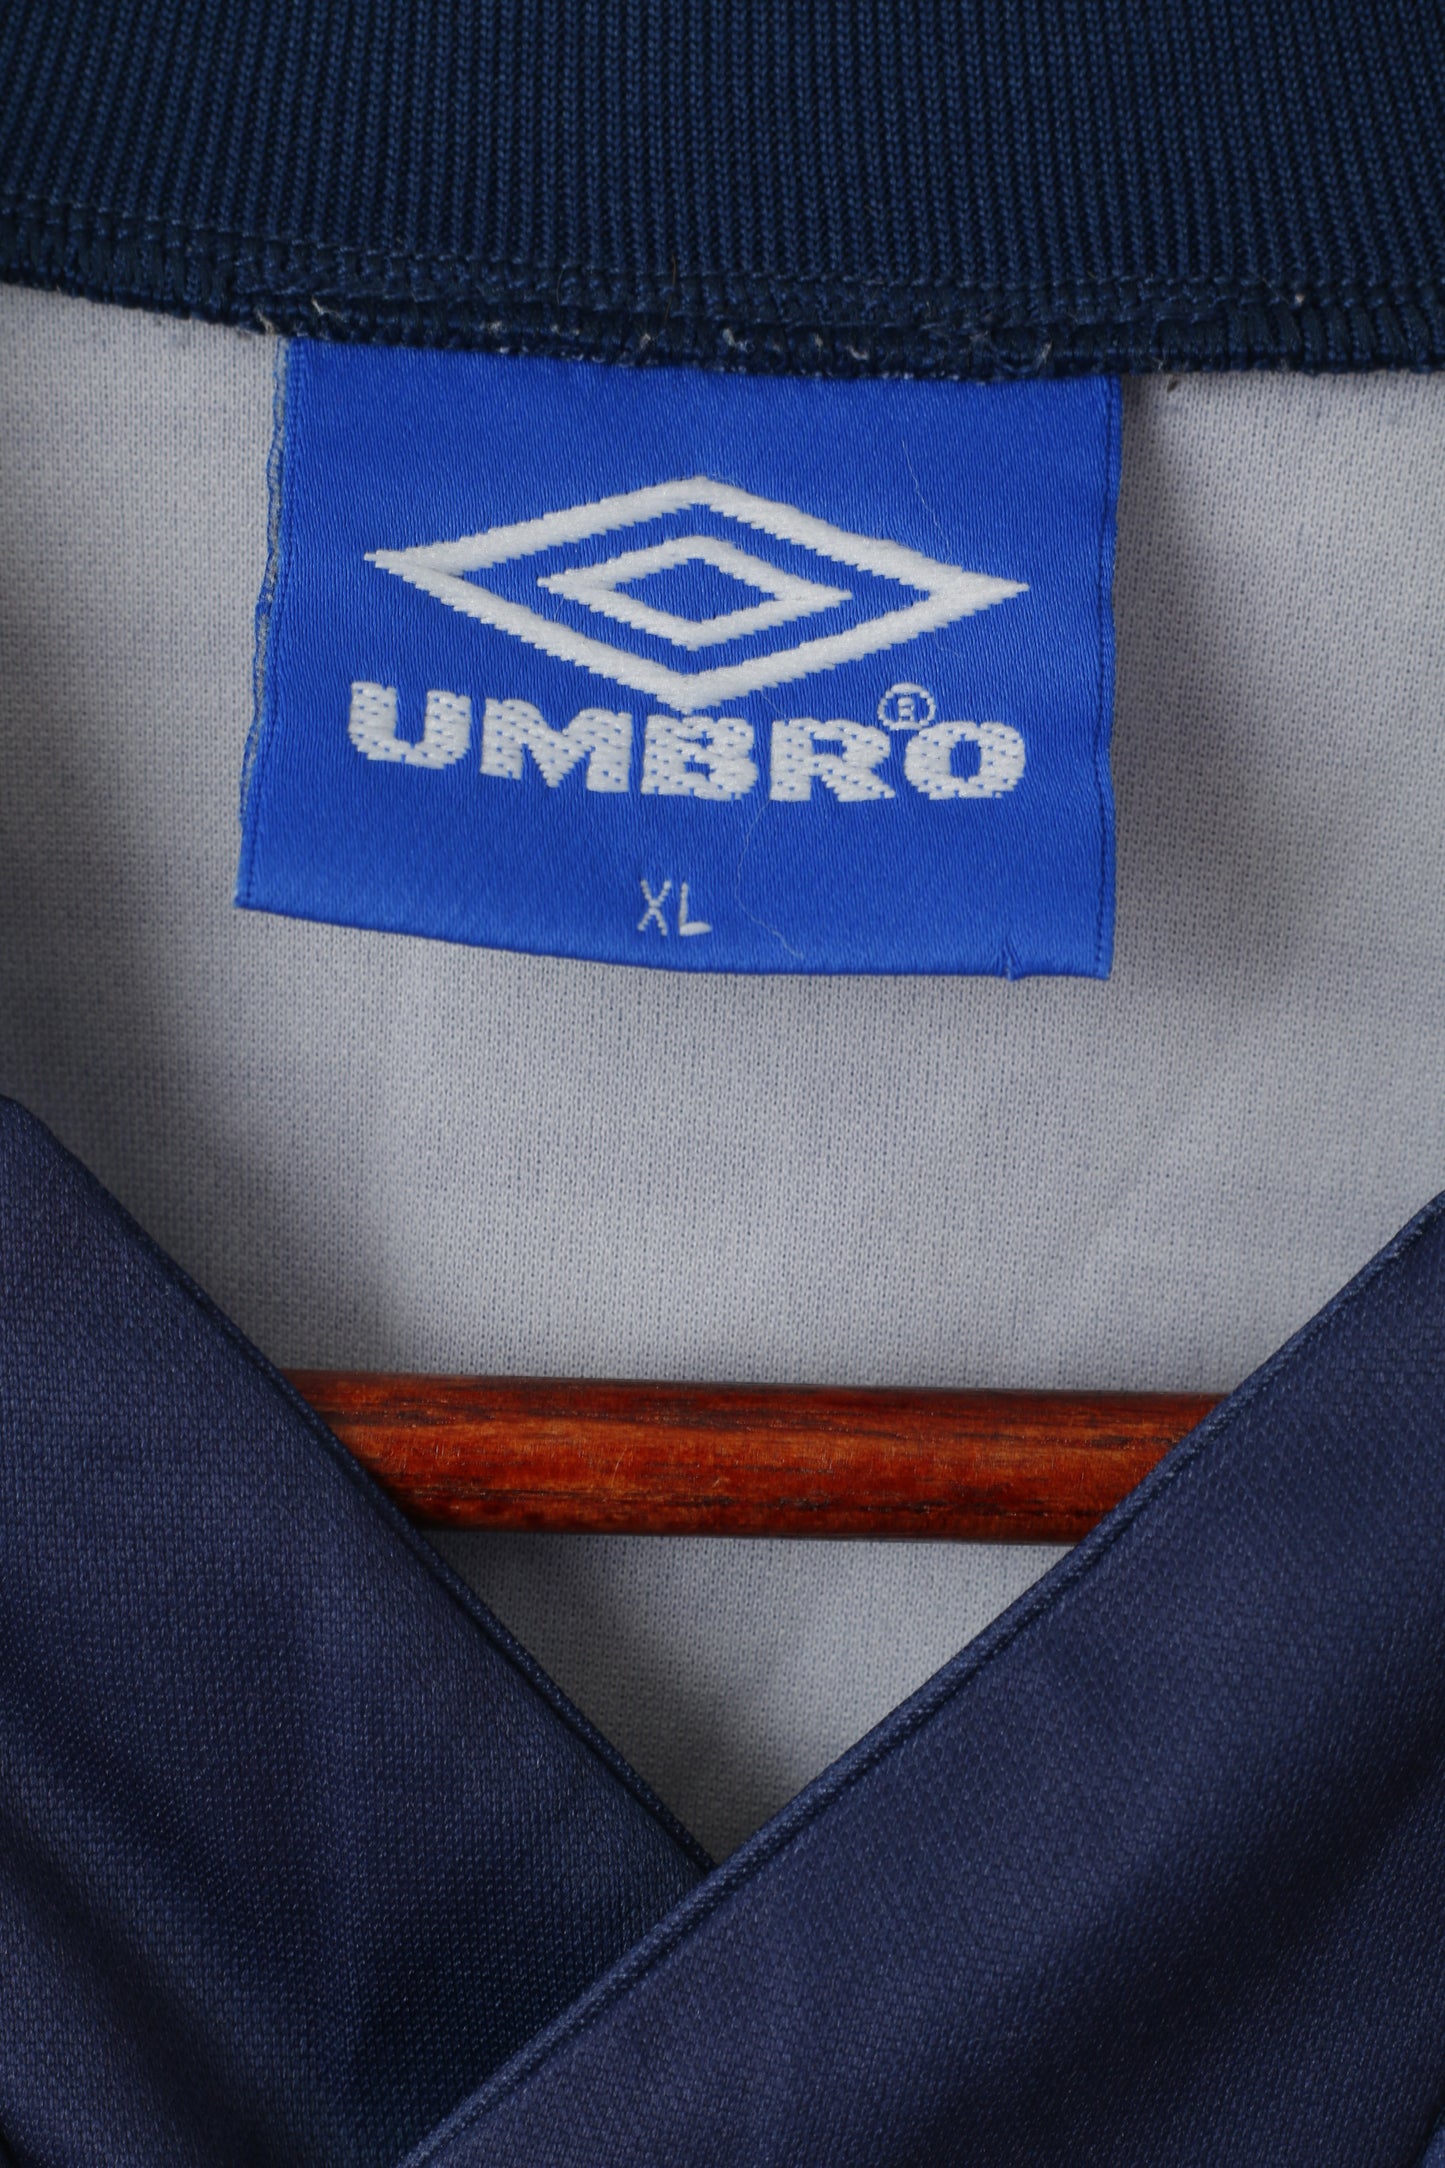 Maglia Umbro da uomo XL a maniche lunghe, maglia da calcio vintage blu scuro, top stampato